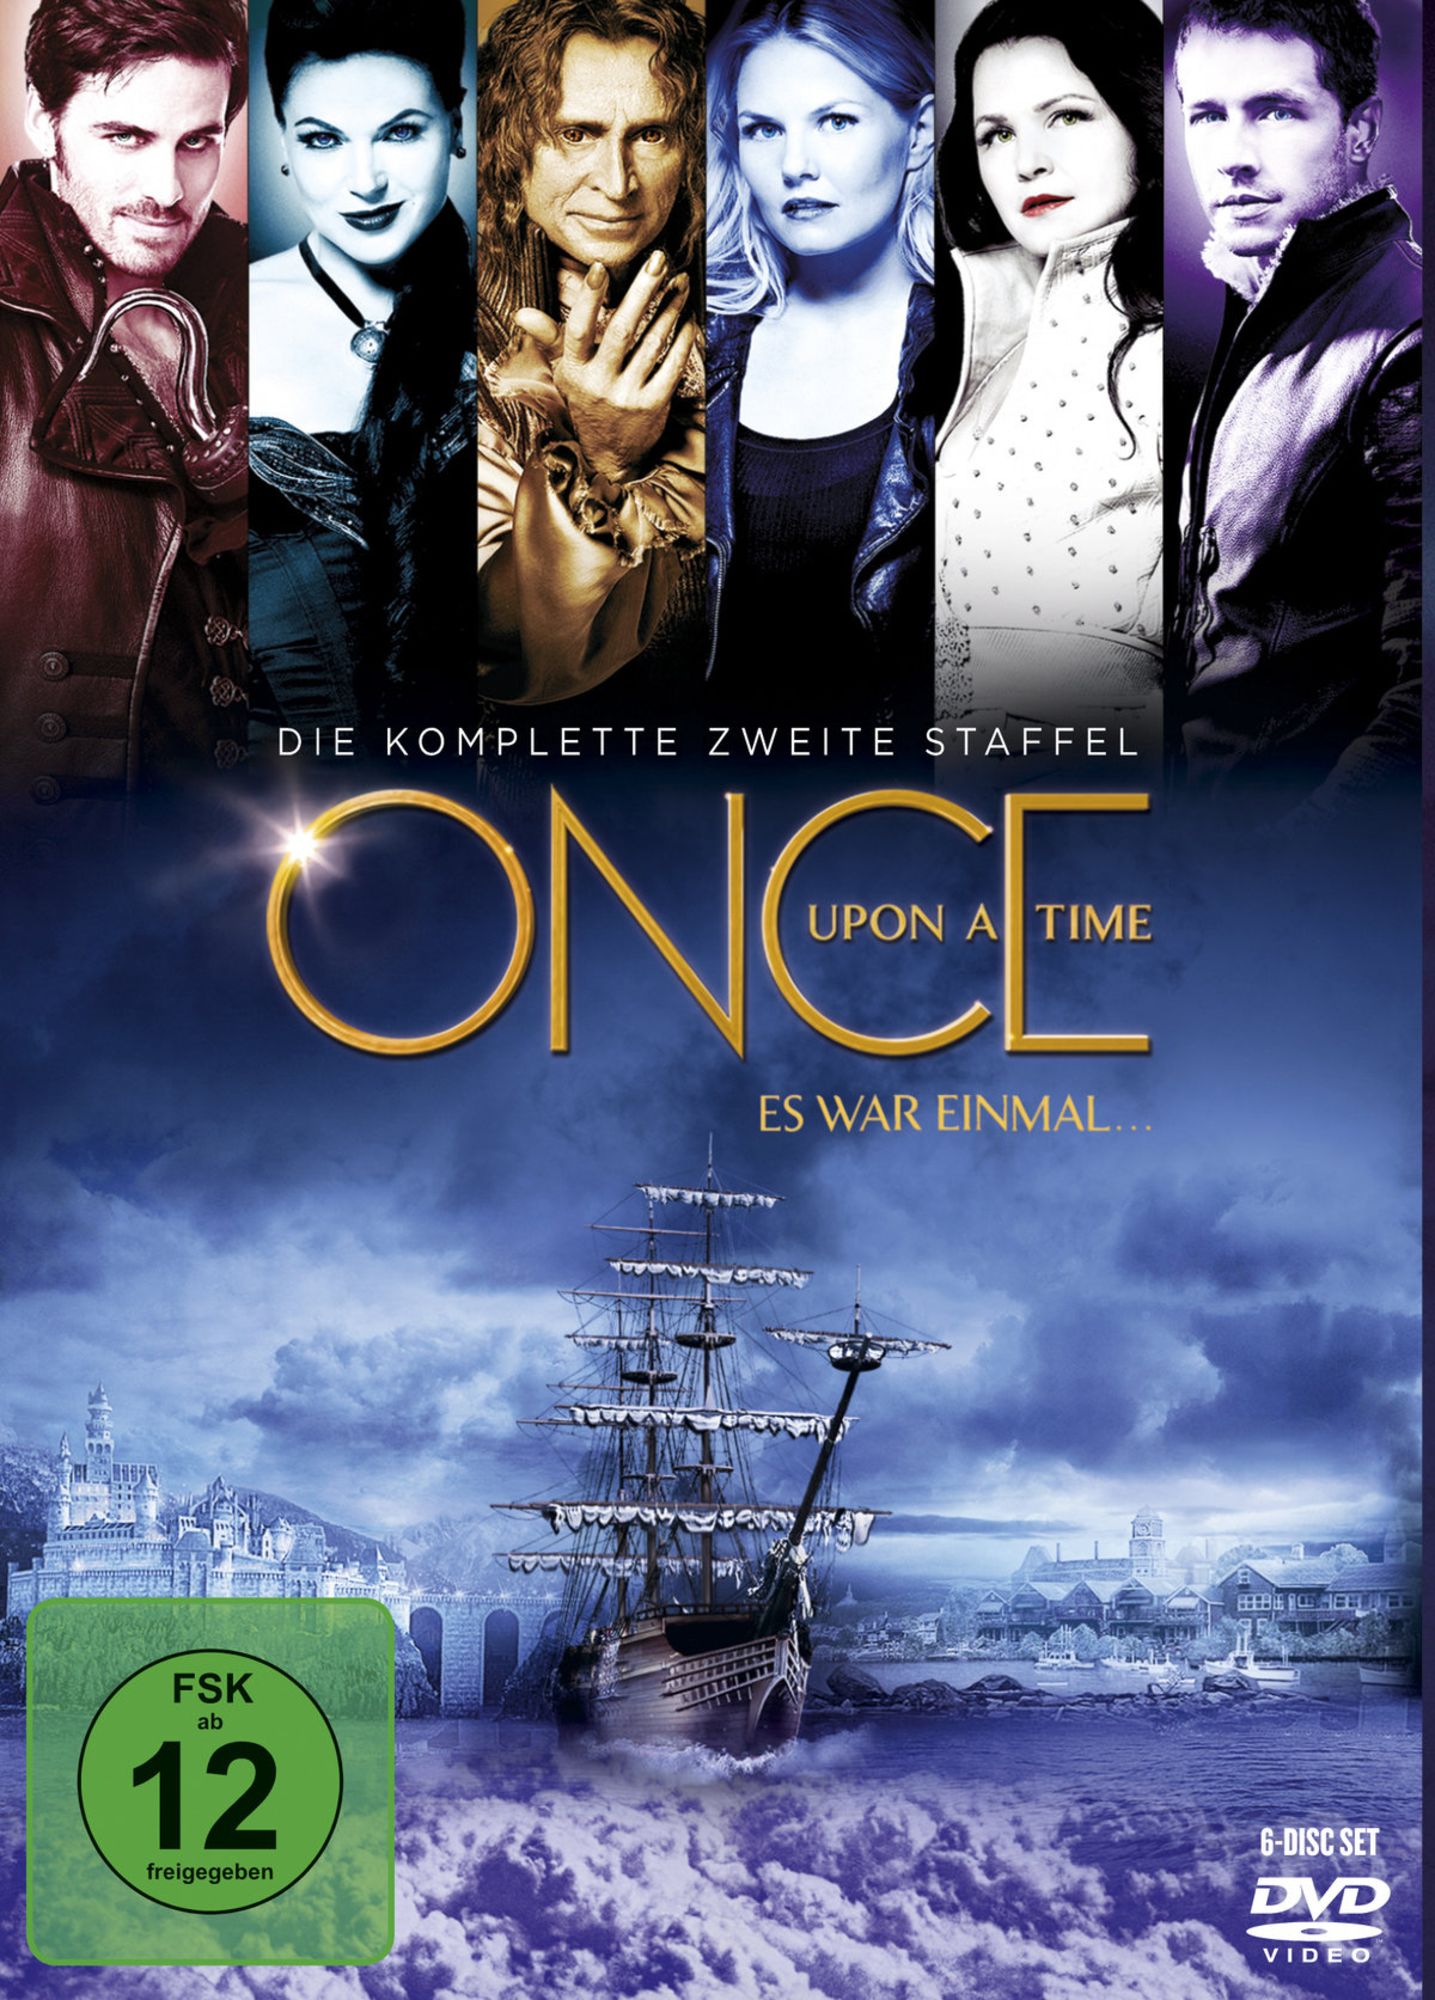 Once Upon A Time - Es war einmal - Season 2' von 'Dean White' - 'DVD